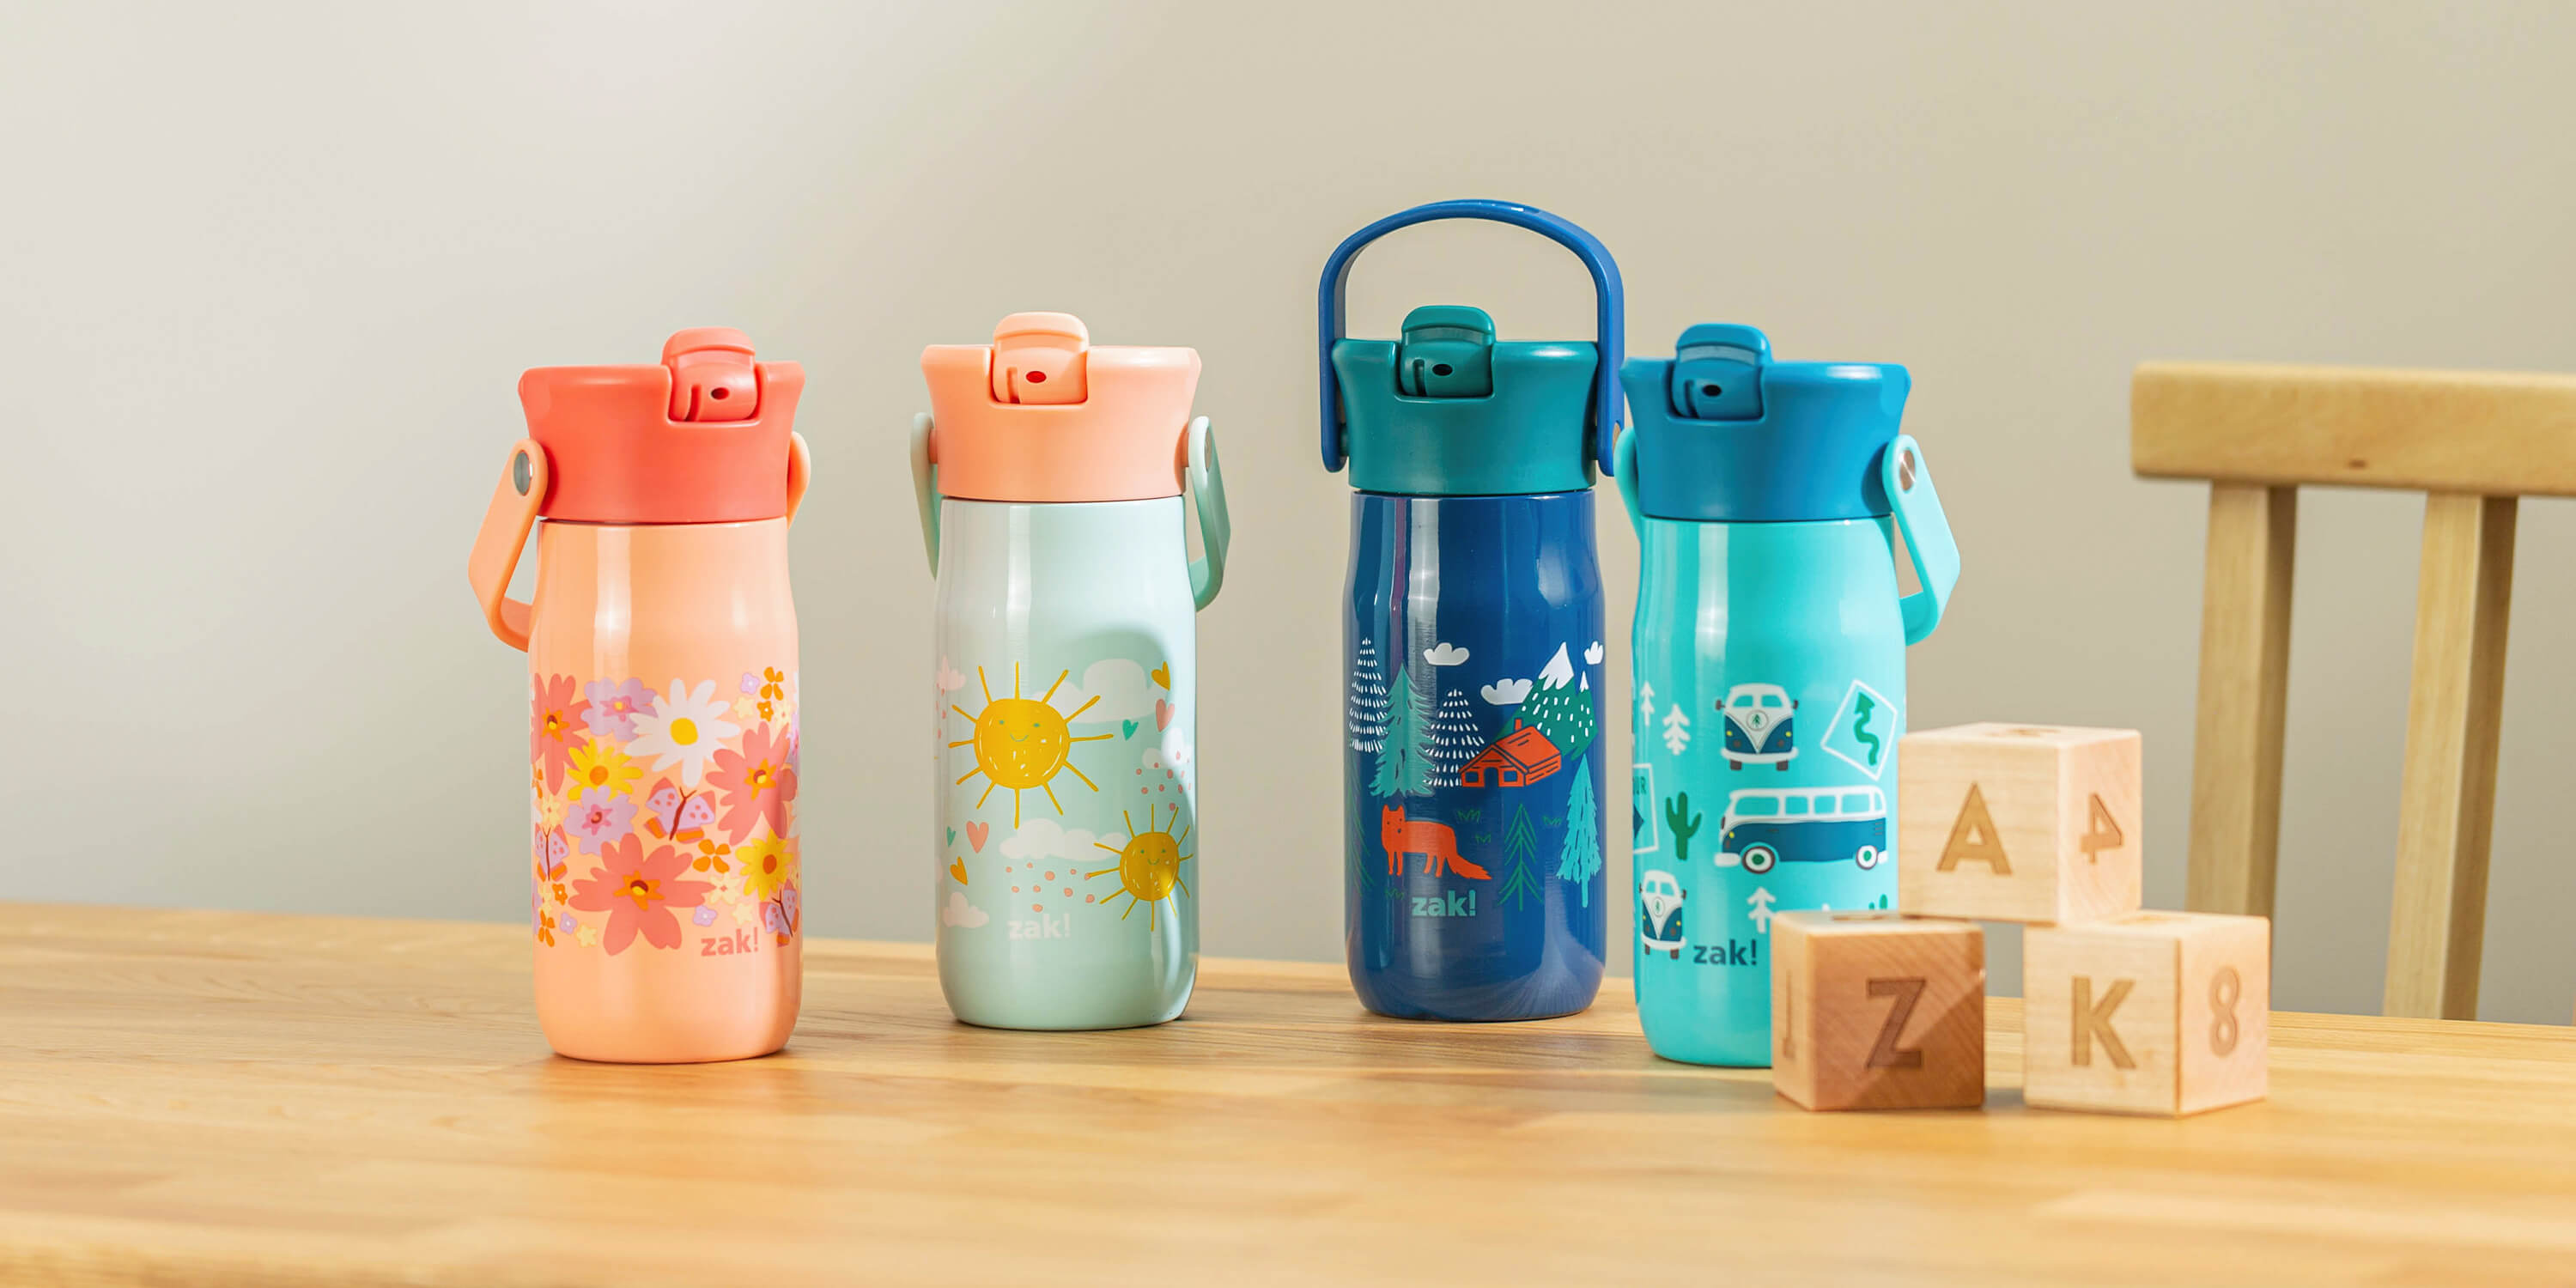 Zak Designs 2pc 16 oz My Little Pony Kids Water Bottle Plastic